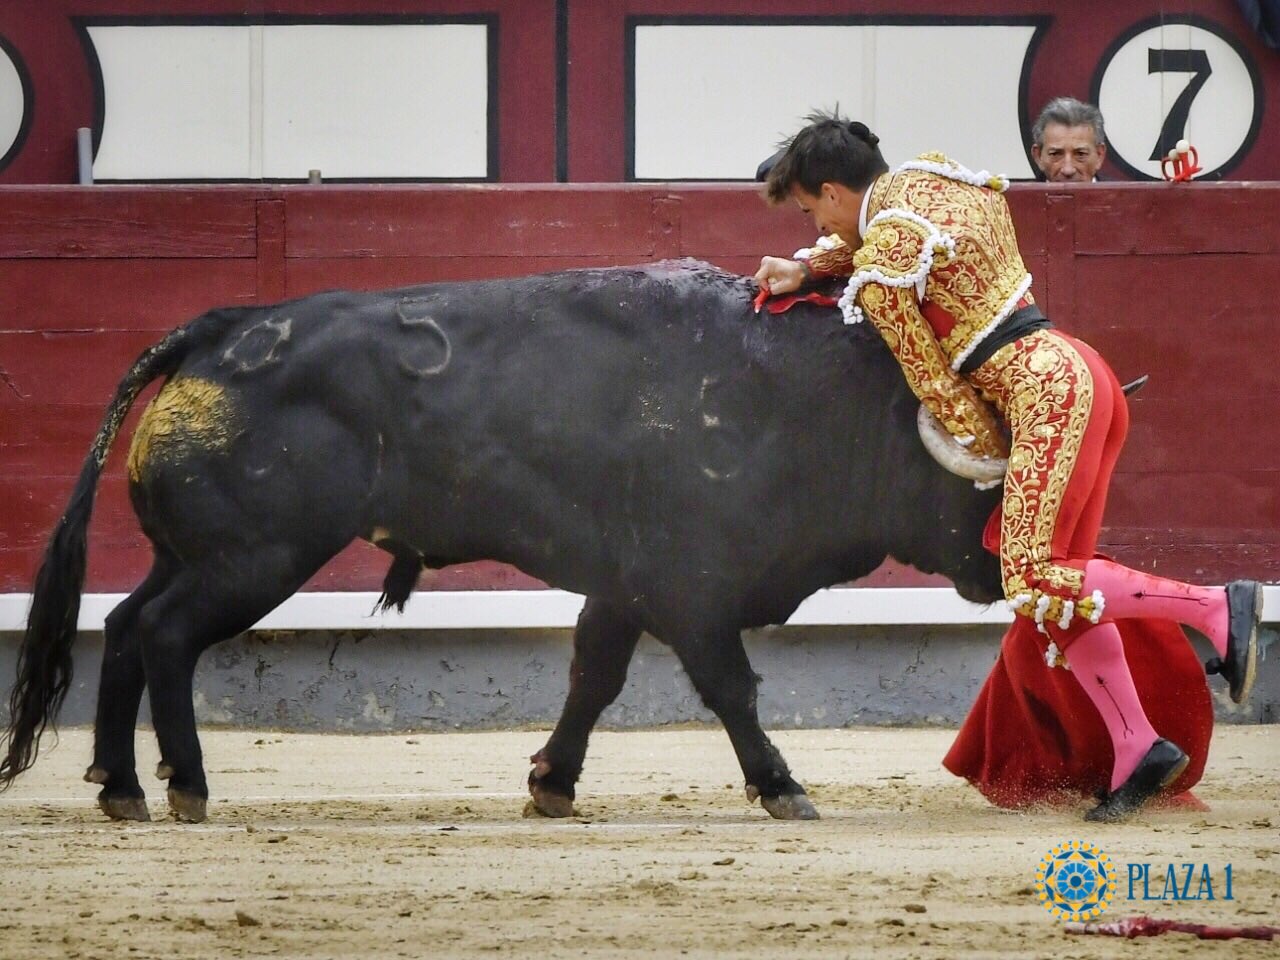 Torero se preparaba a ejecutar a toro y recibe cornada mortal de toro